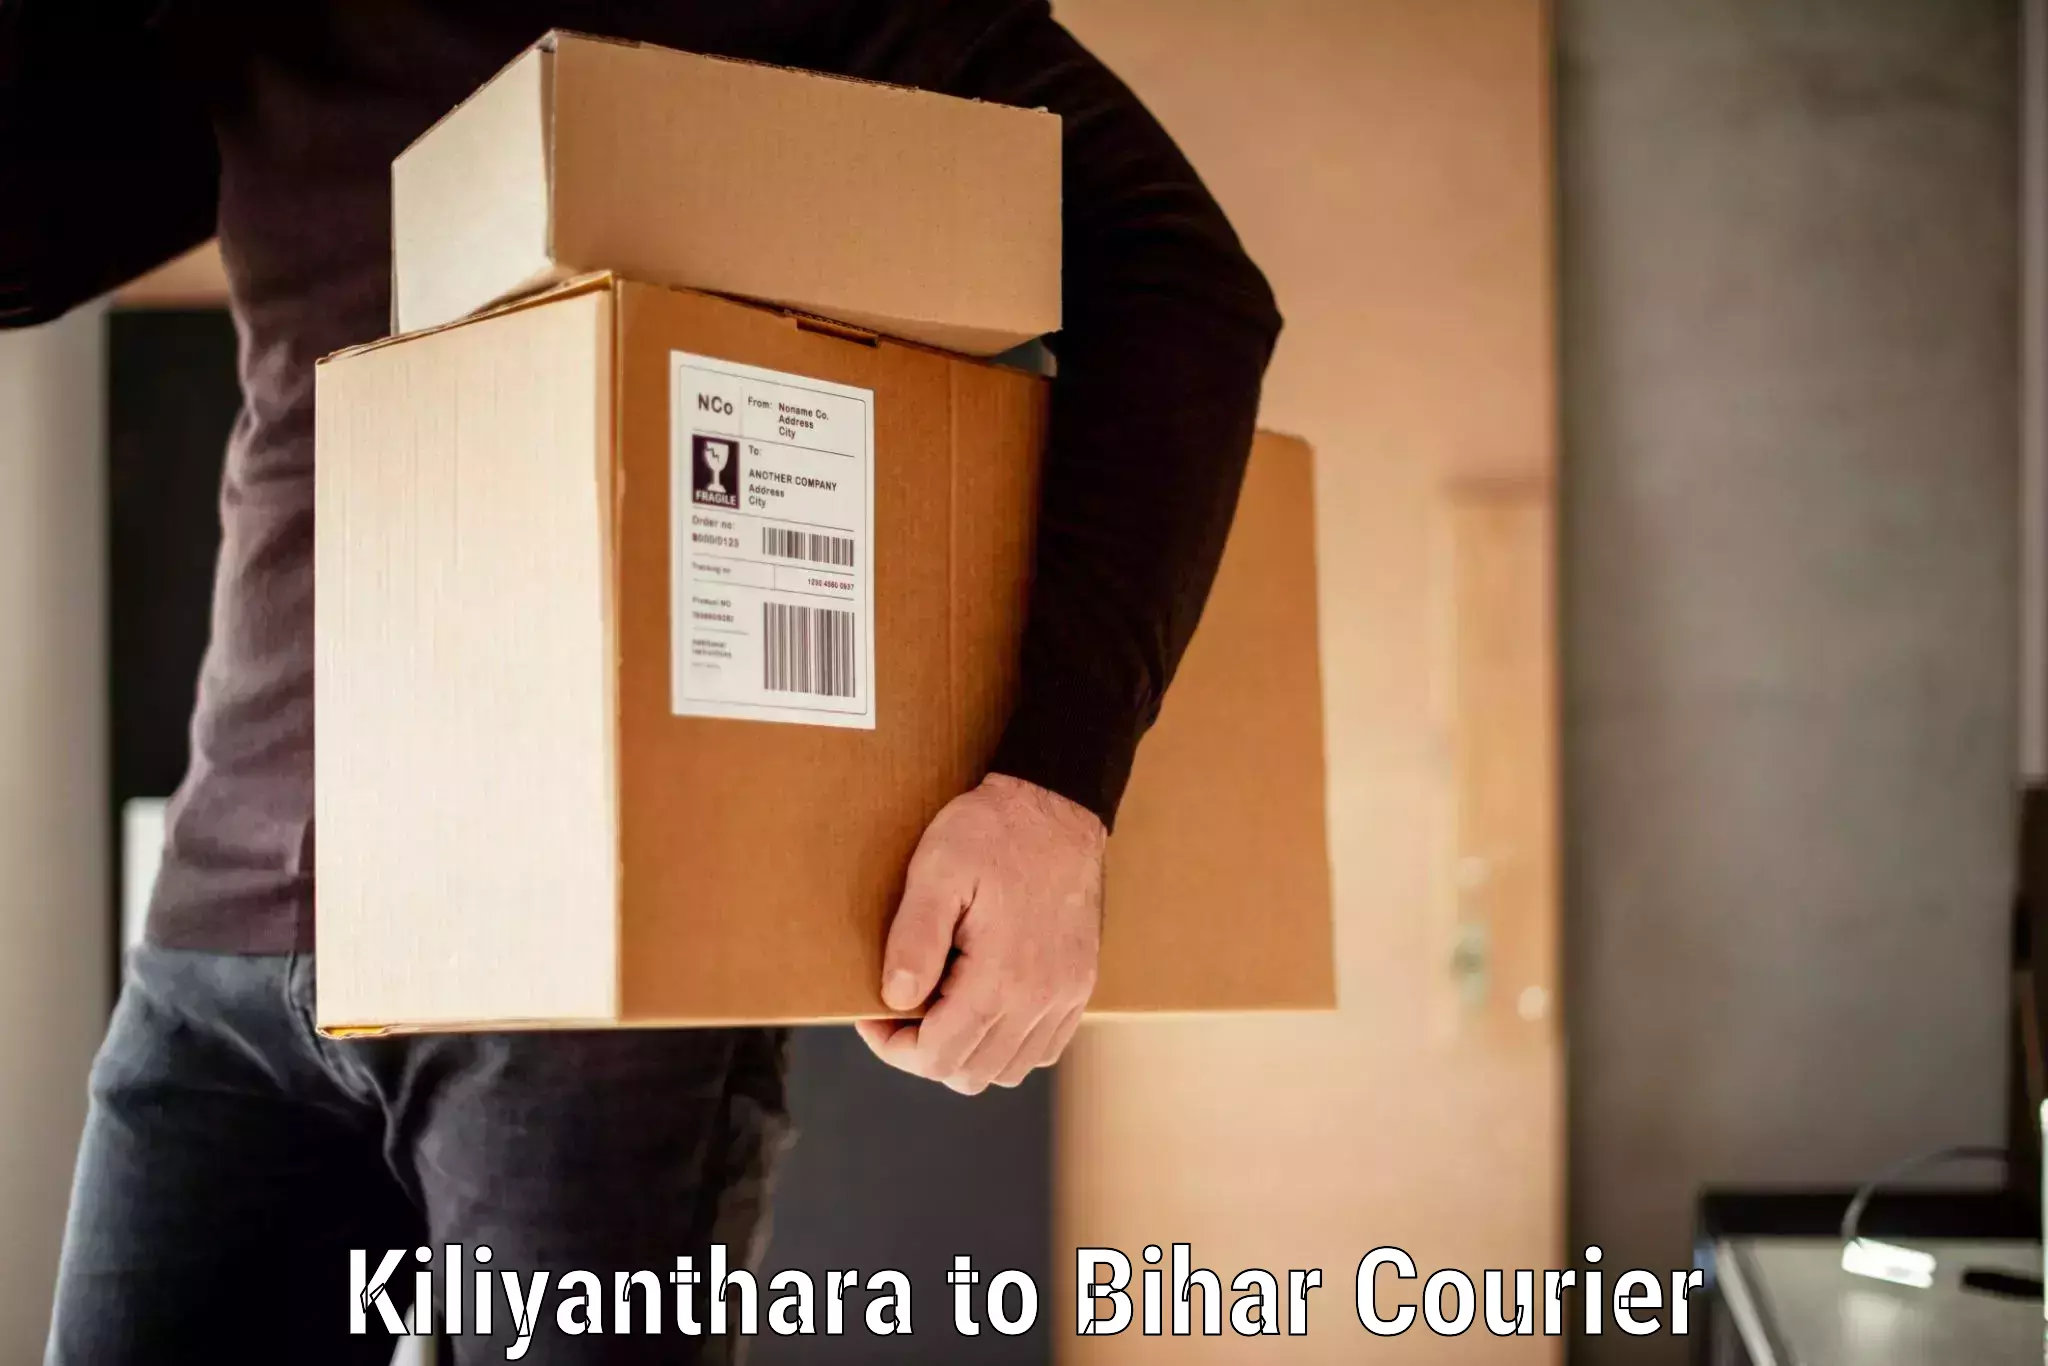 Weekend baggage shipping Kiliyanthara to Biraul